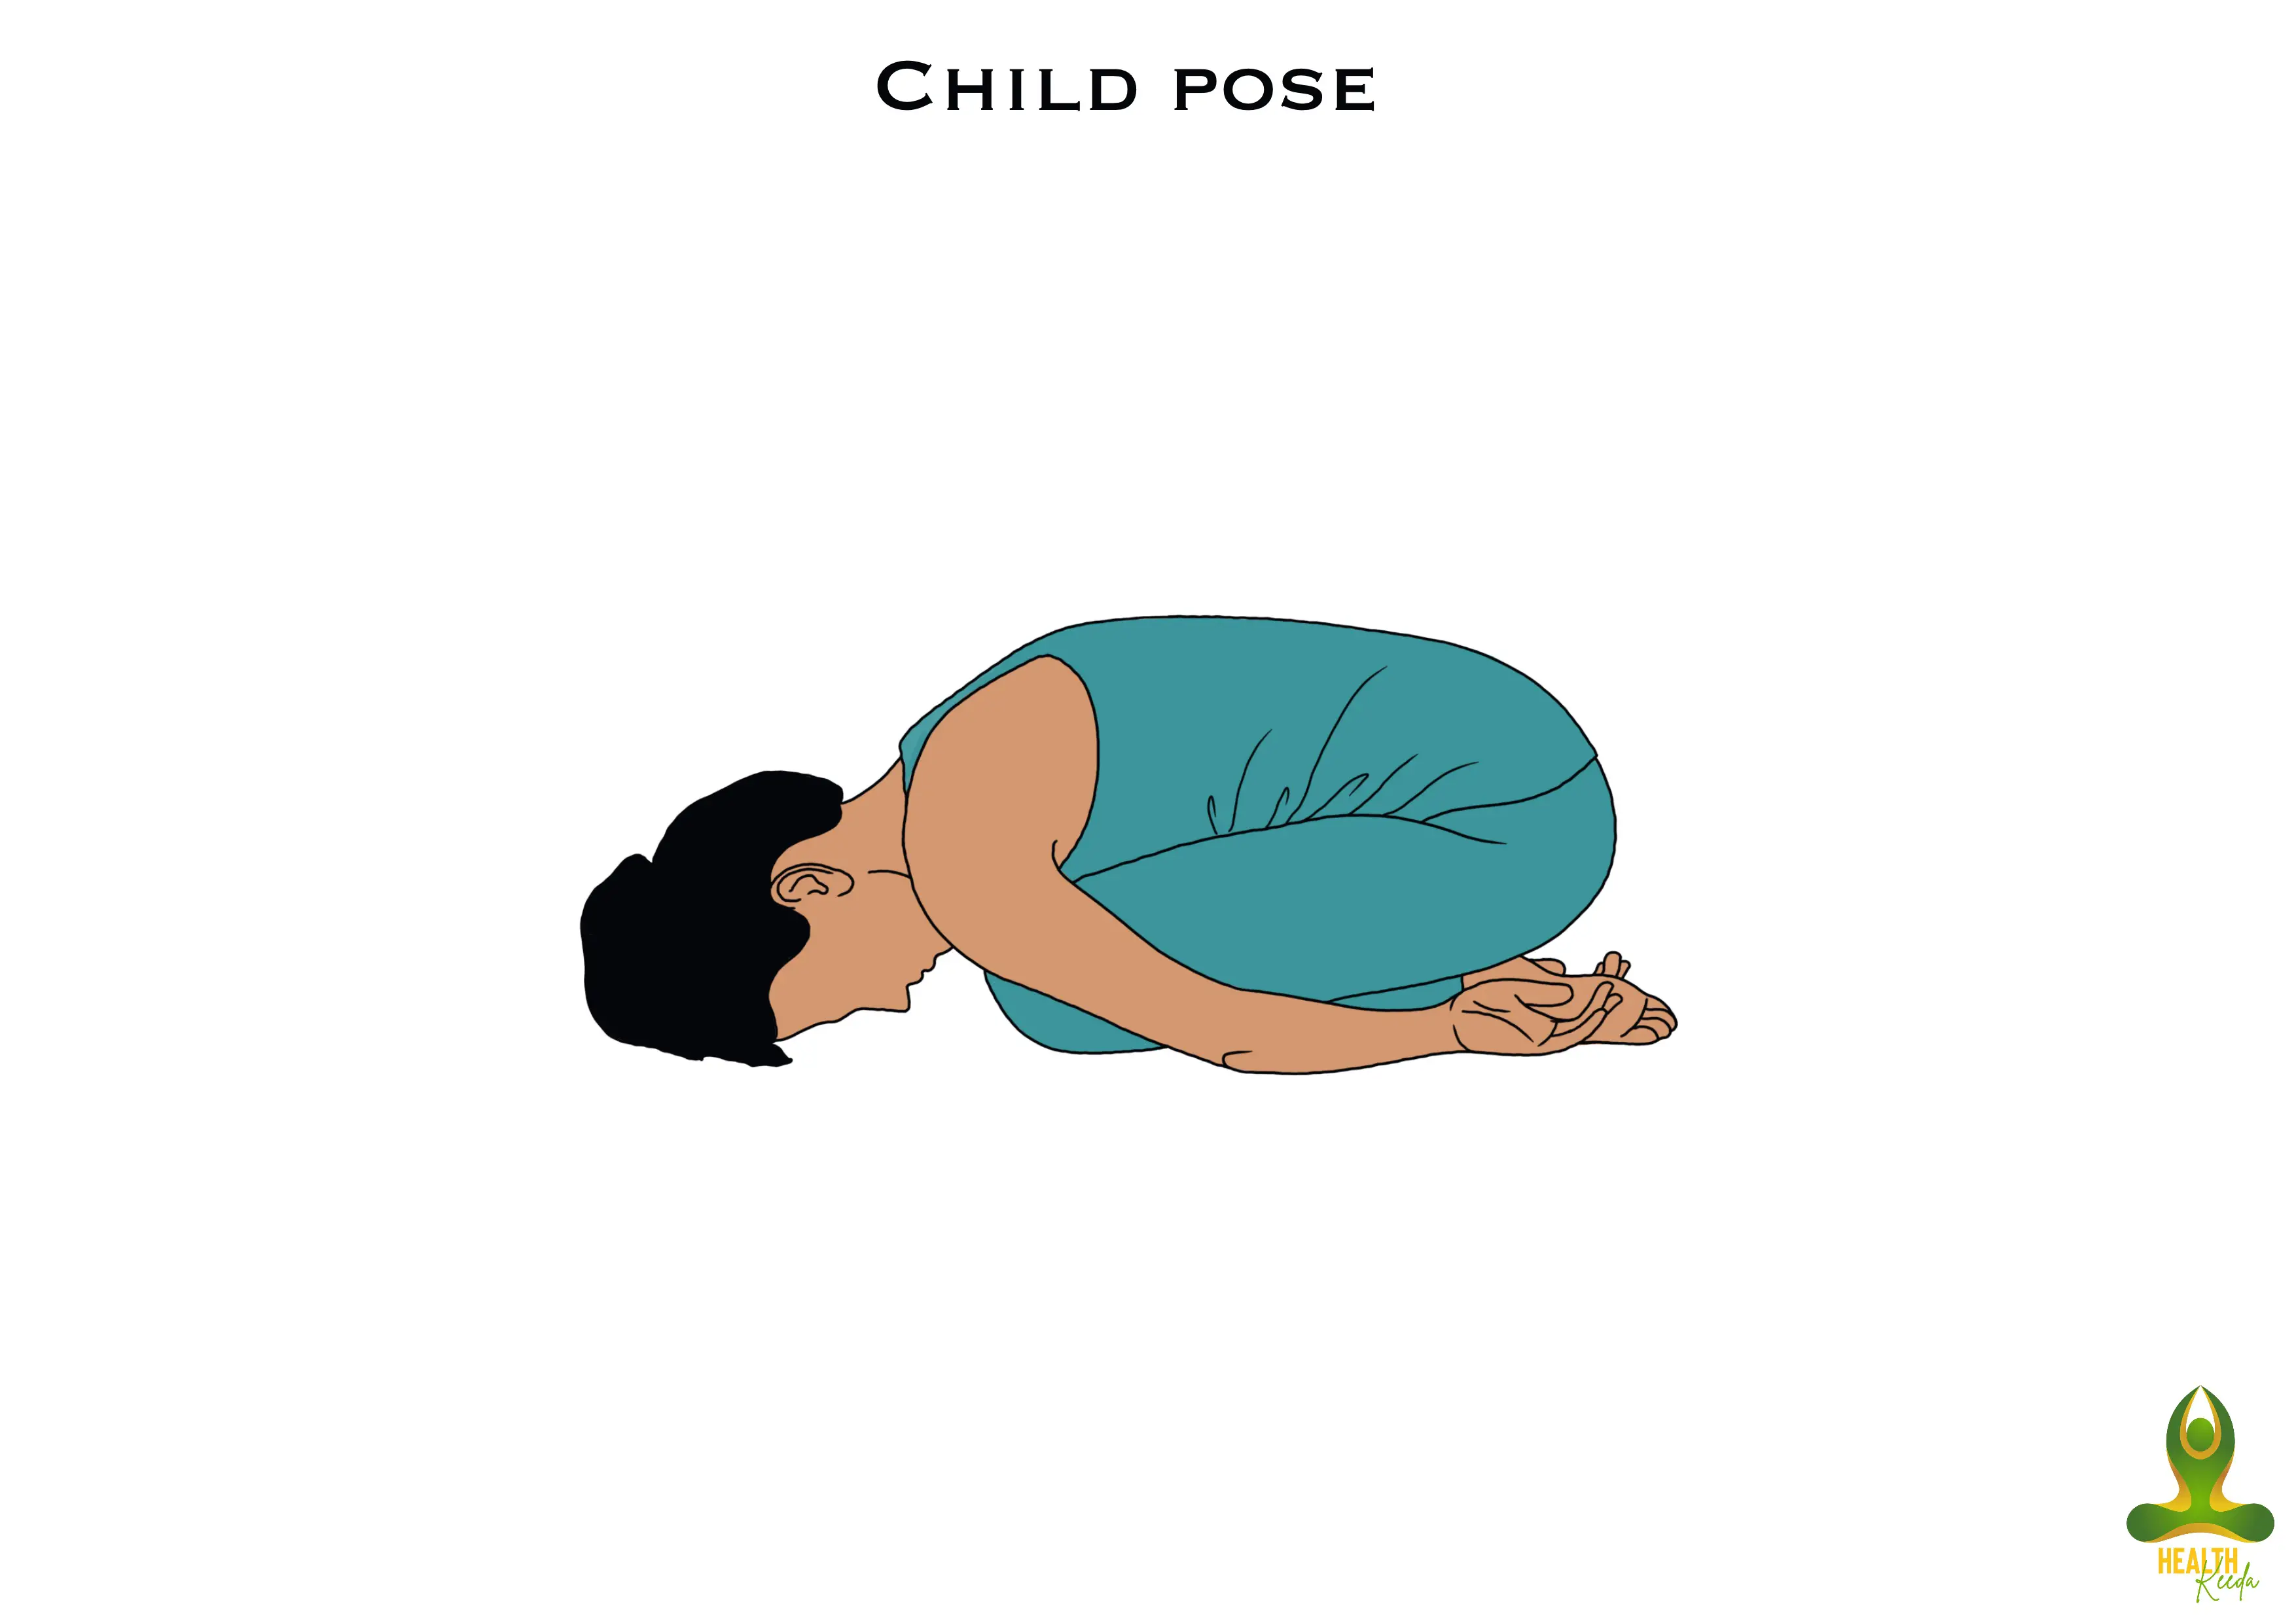 Child pose or balasana